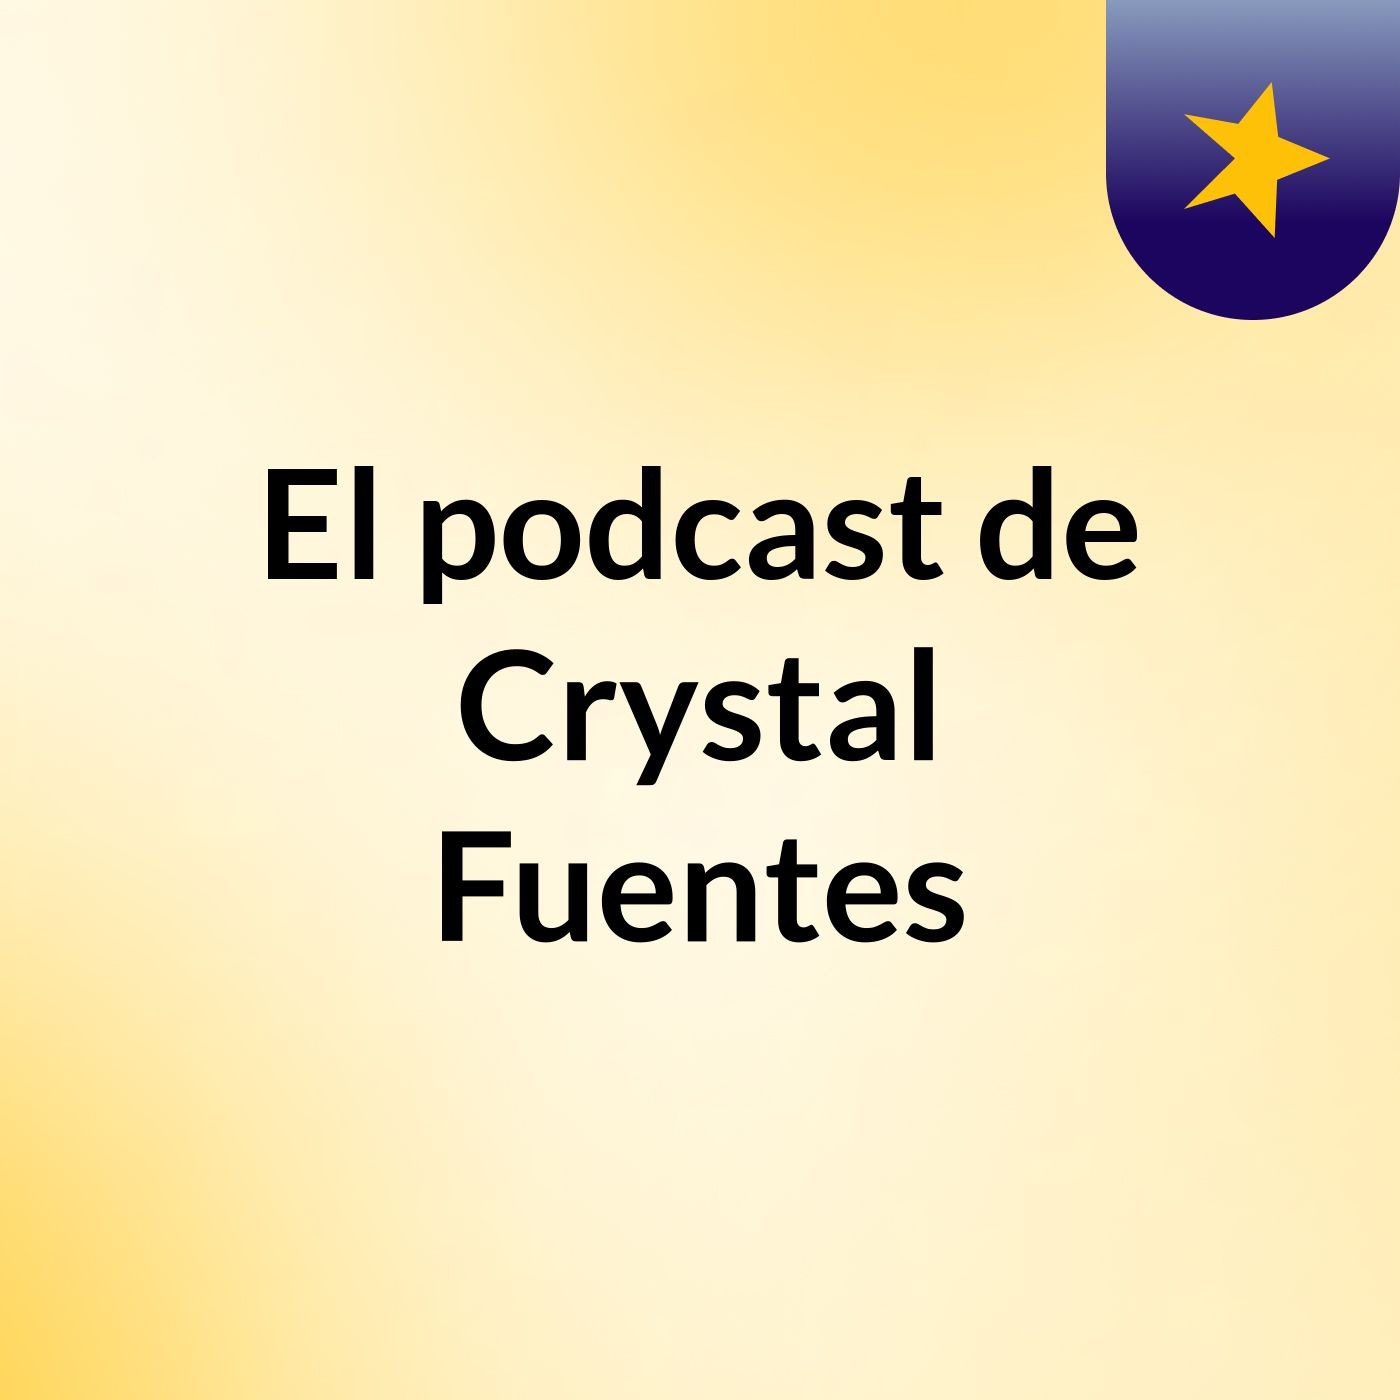 El podcast de Crystal Fuentes